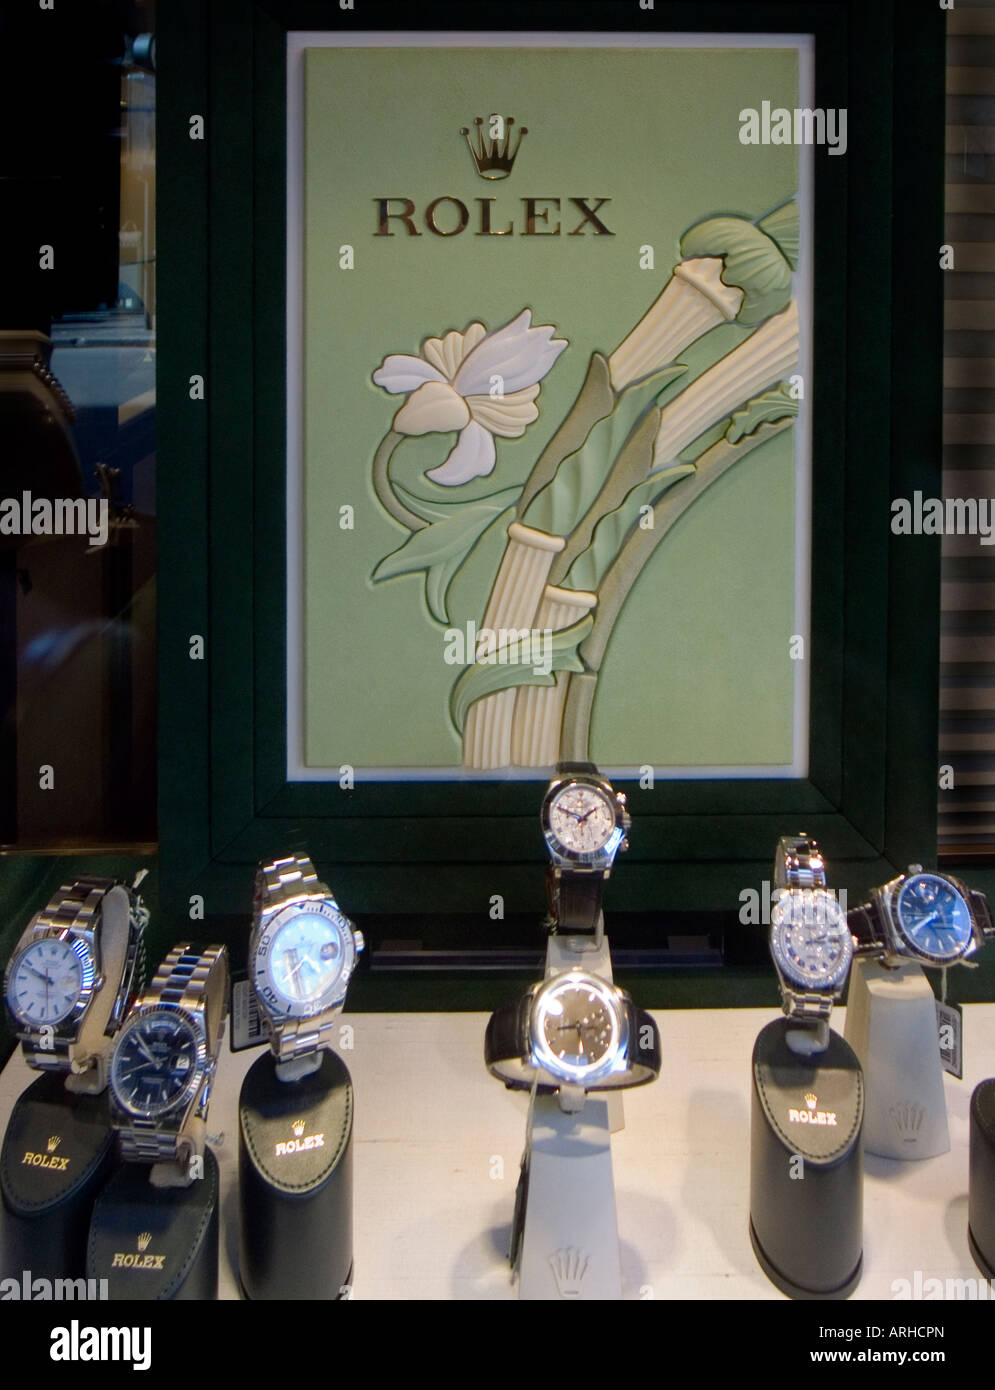 Rolex-Uhren in einem Schmuck-Schaufenster Stockfotografie - Alamy